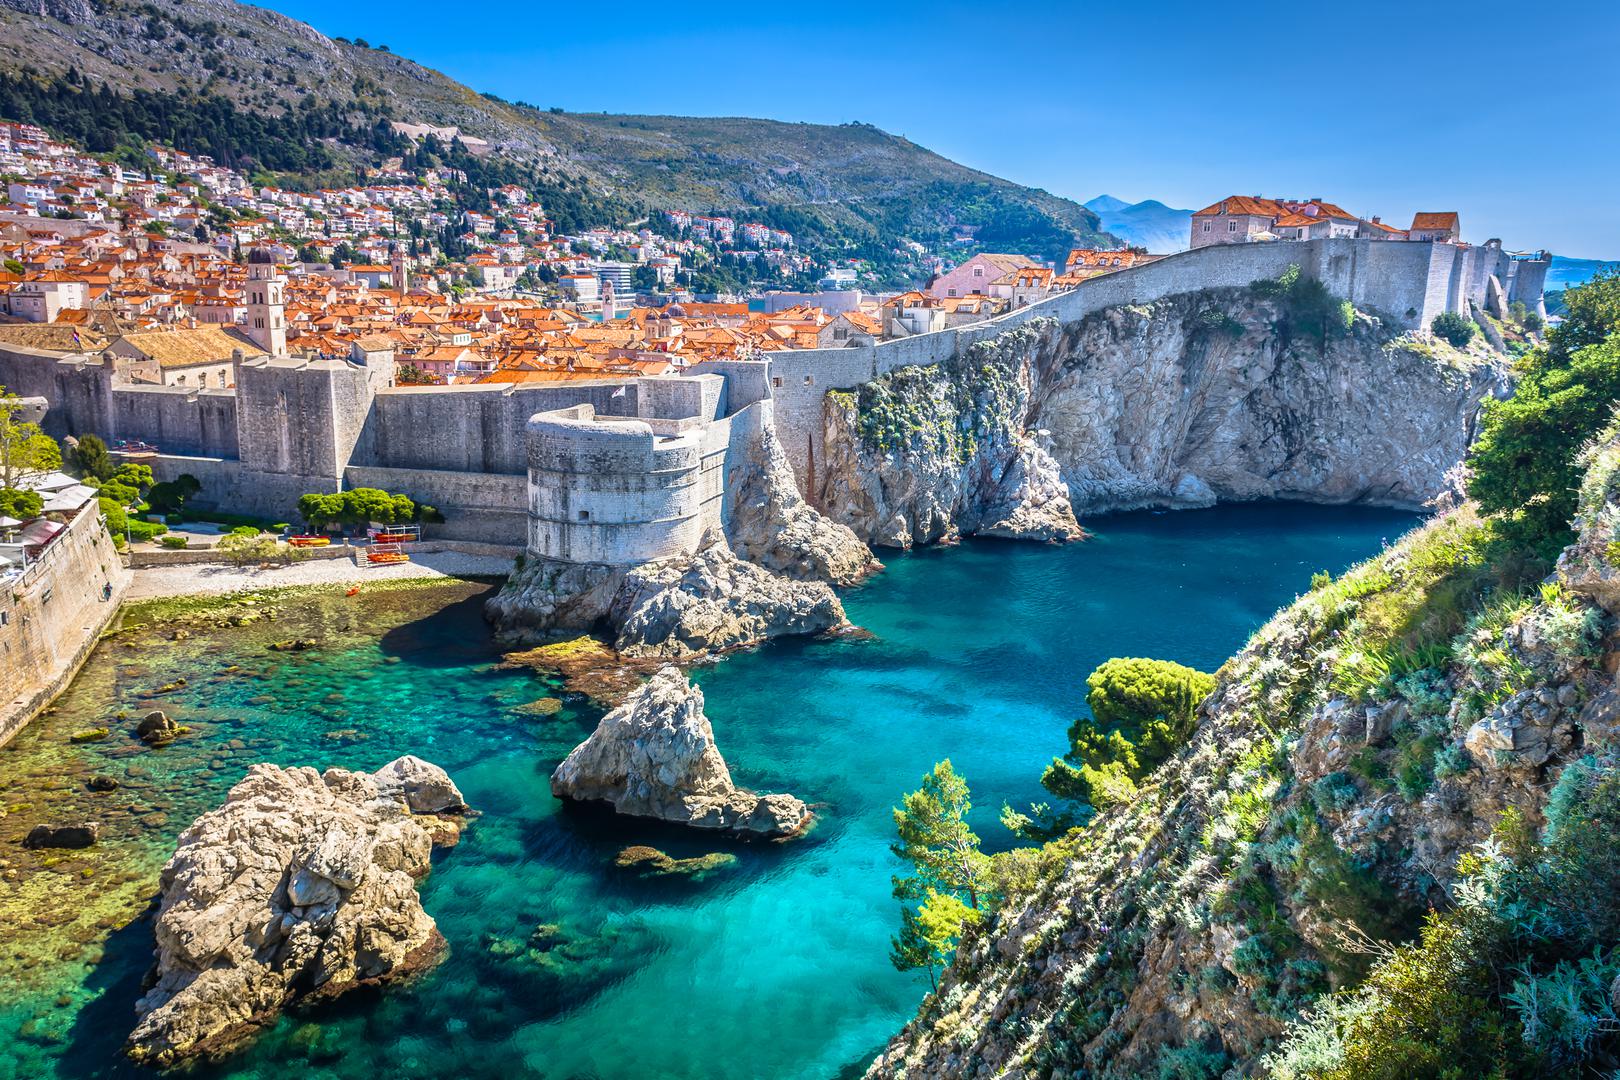 Dubrovačke zidine: Uspješan razvoj Dubrovnika u prošlosti bio je uvjetovan prvenstveno njegovim povoljnim geografskim položajem, te gospodarstvom temeljenim na pomorstvu i trgovačkoj djelatnosti. Pri ulasku u Jadransko more Dubrovnik je prva otočno zaštićena luka na pomorskom putu koji ide od istoka prema zapadu, s brzim pristupom zaleđu dolinom Neretve. Najnovija arheološka istraživanja pokazala su da je ispod današnjeg grada postojalo naselje iz 6. stoljeća, a vjerojatno i ranije. Proširuje se dolaskom Hrvata u 7. stoljeću, nakon napuštanja antičkog Epidaura (današnjeg Cavtata). Intenziviranje prometa između Istoka i Zapada tijekom i nakon križarskih ratova rezultiralo je u 12. i 13. stoljeću razvojem pomorskih i trgovačkih središta diljem Sredozemlja i Jadranskog mora. Dubrovnik je bio jedan od njih. Zadarski mir 1358. godine oslobodio je Dubrovnik od mletačke vlasti i bio je ključan za uspješan daljnji razvoj.